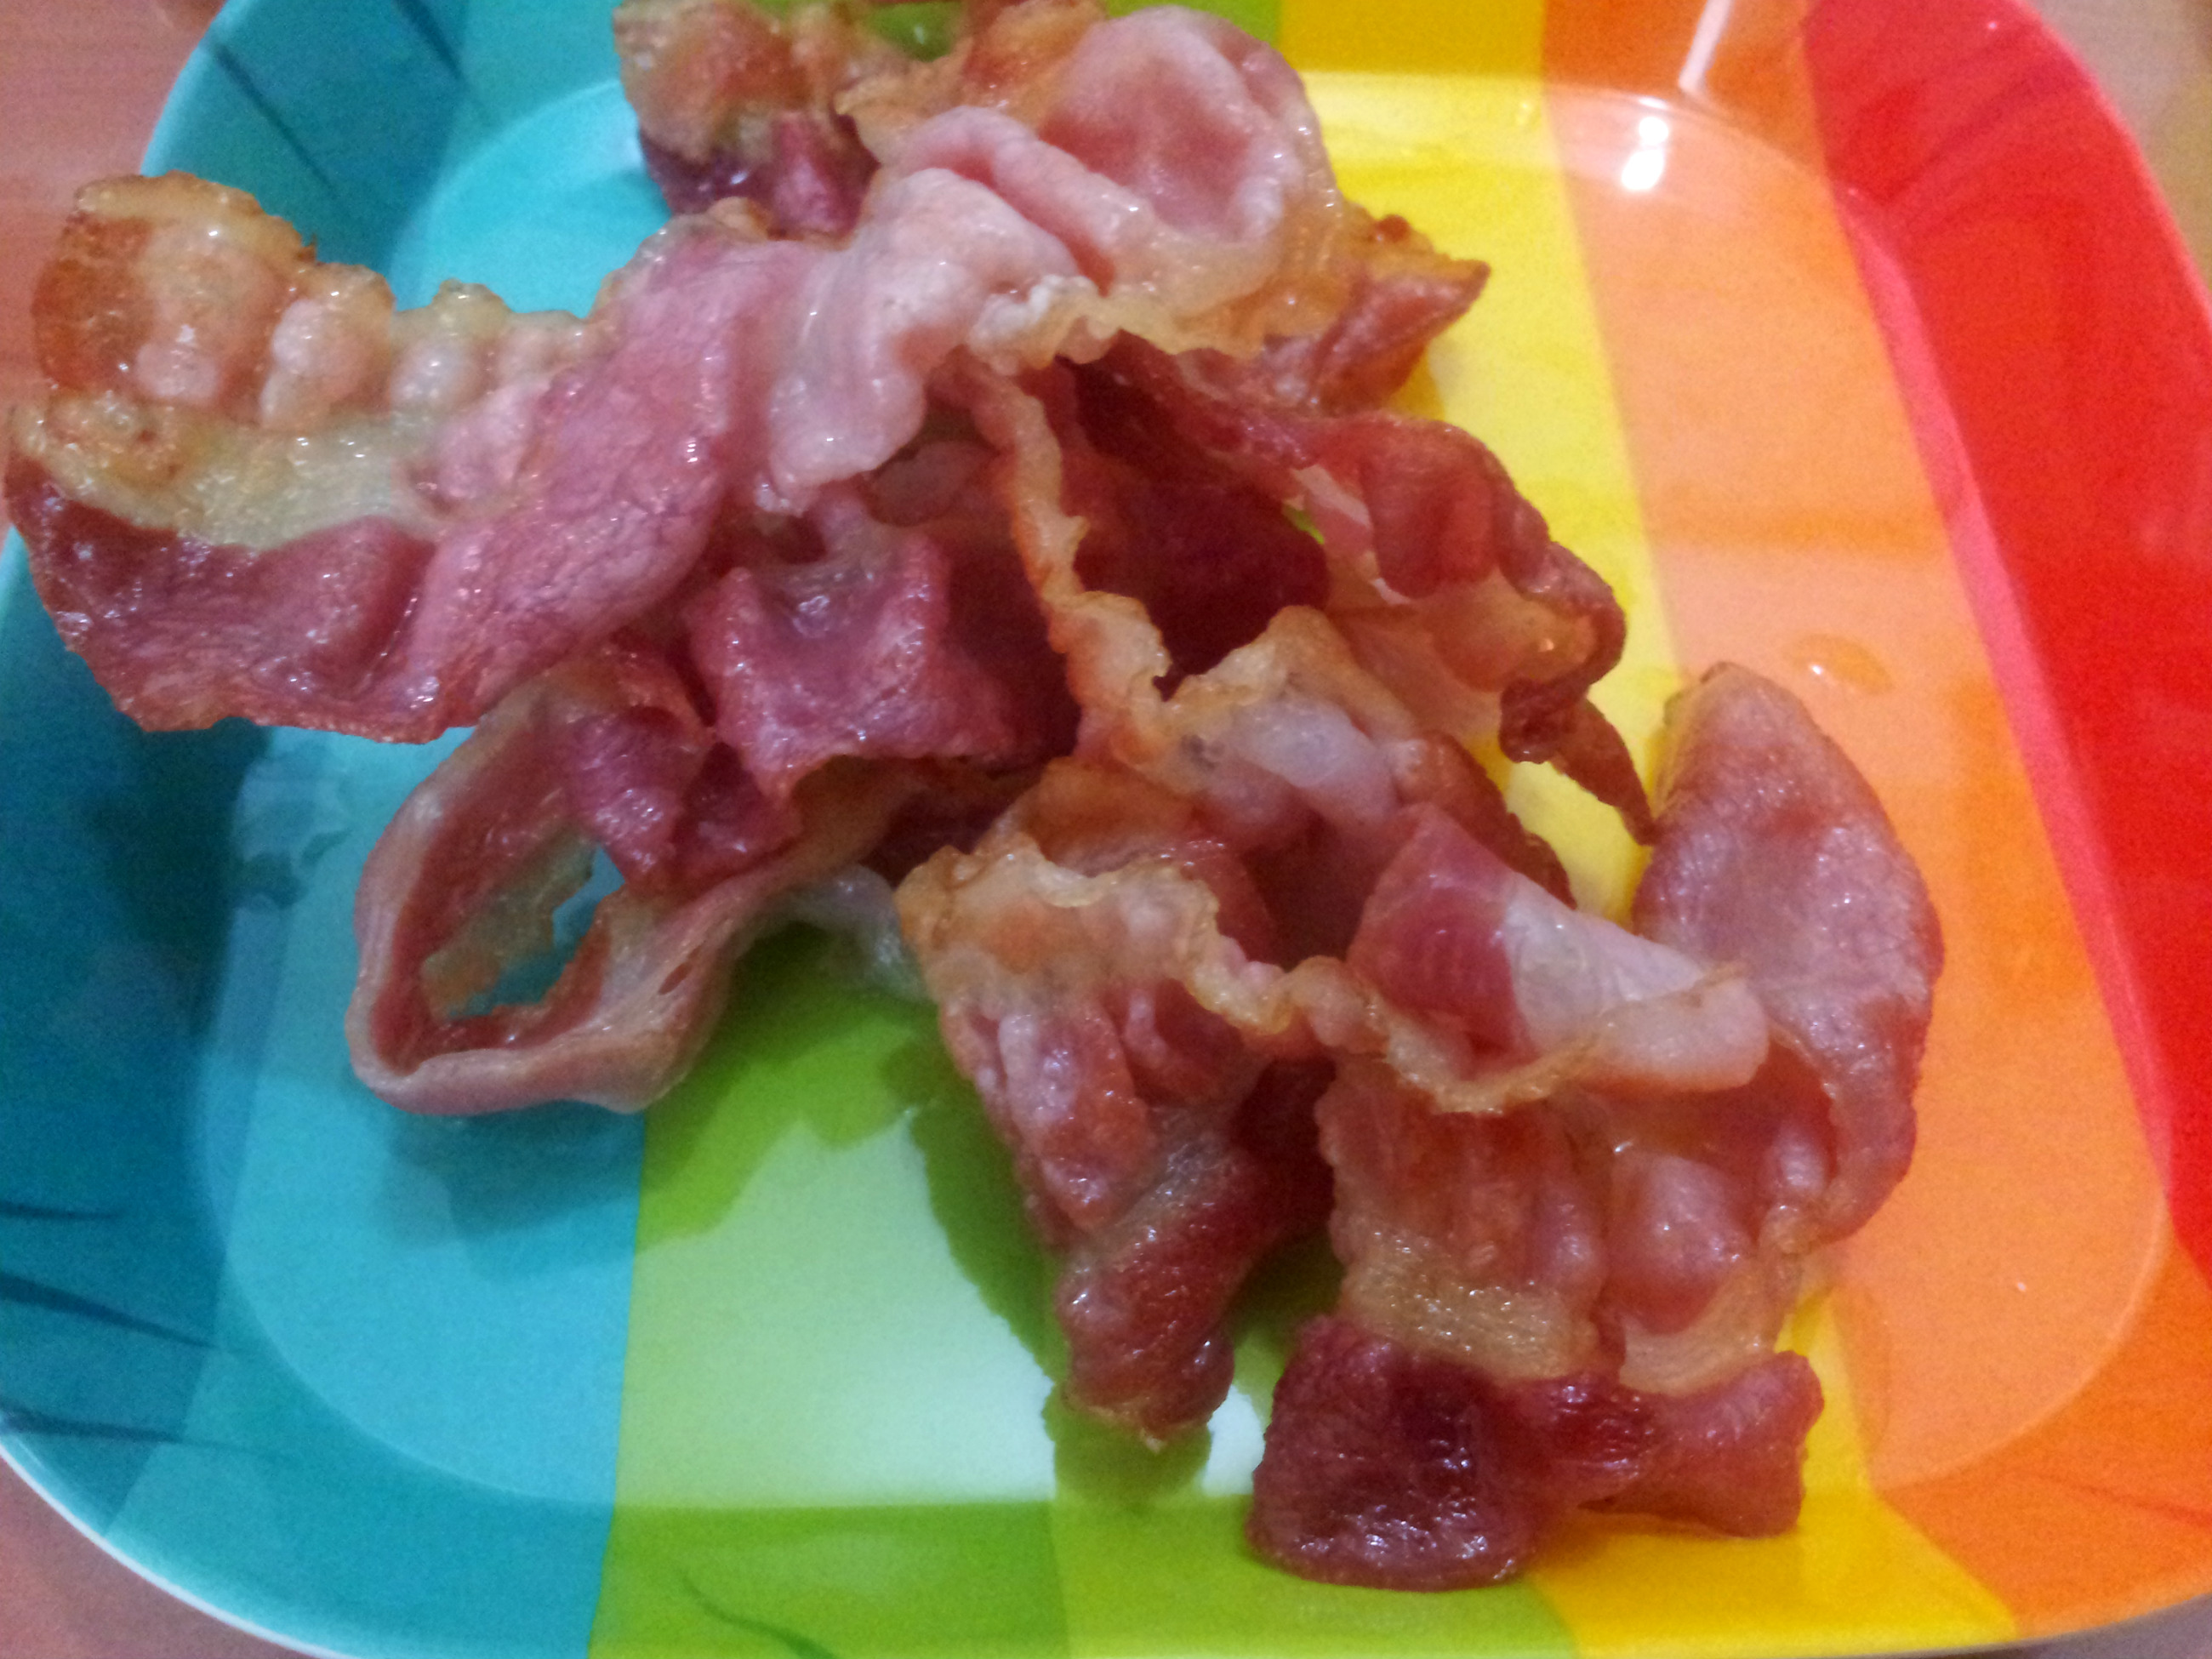 Chipsuri de bacon